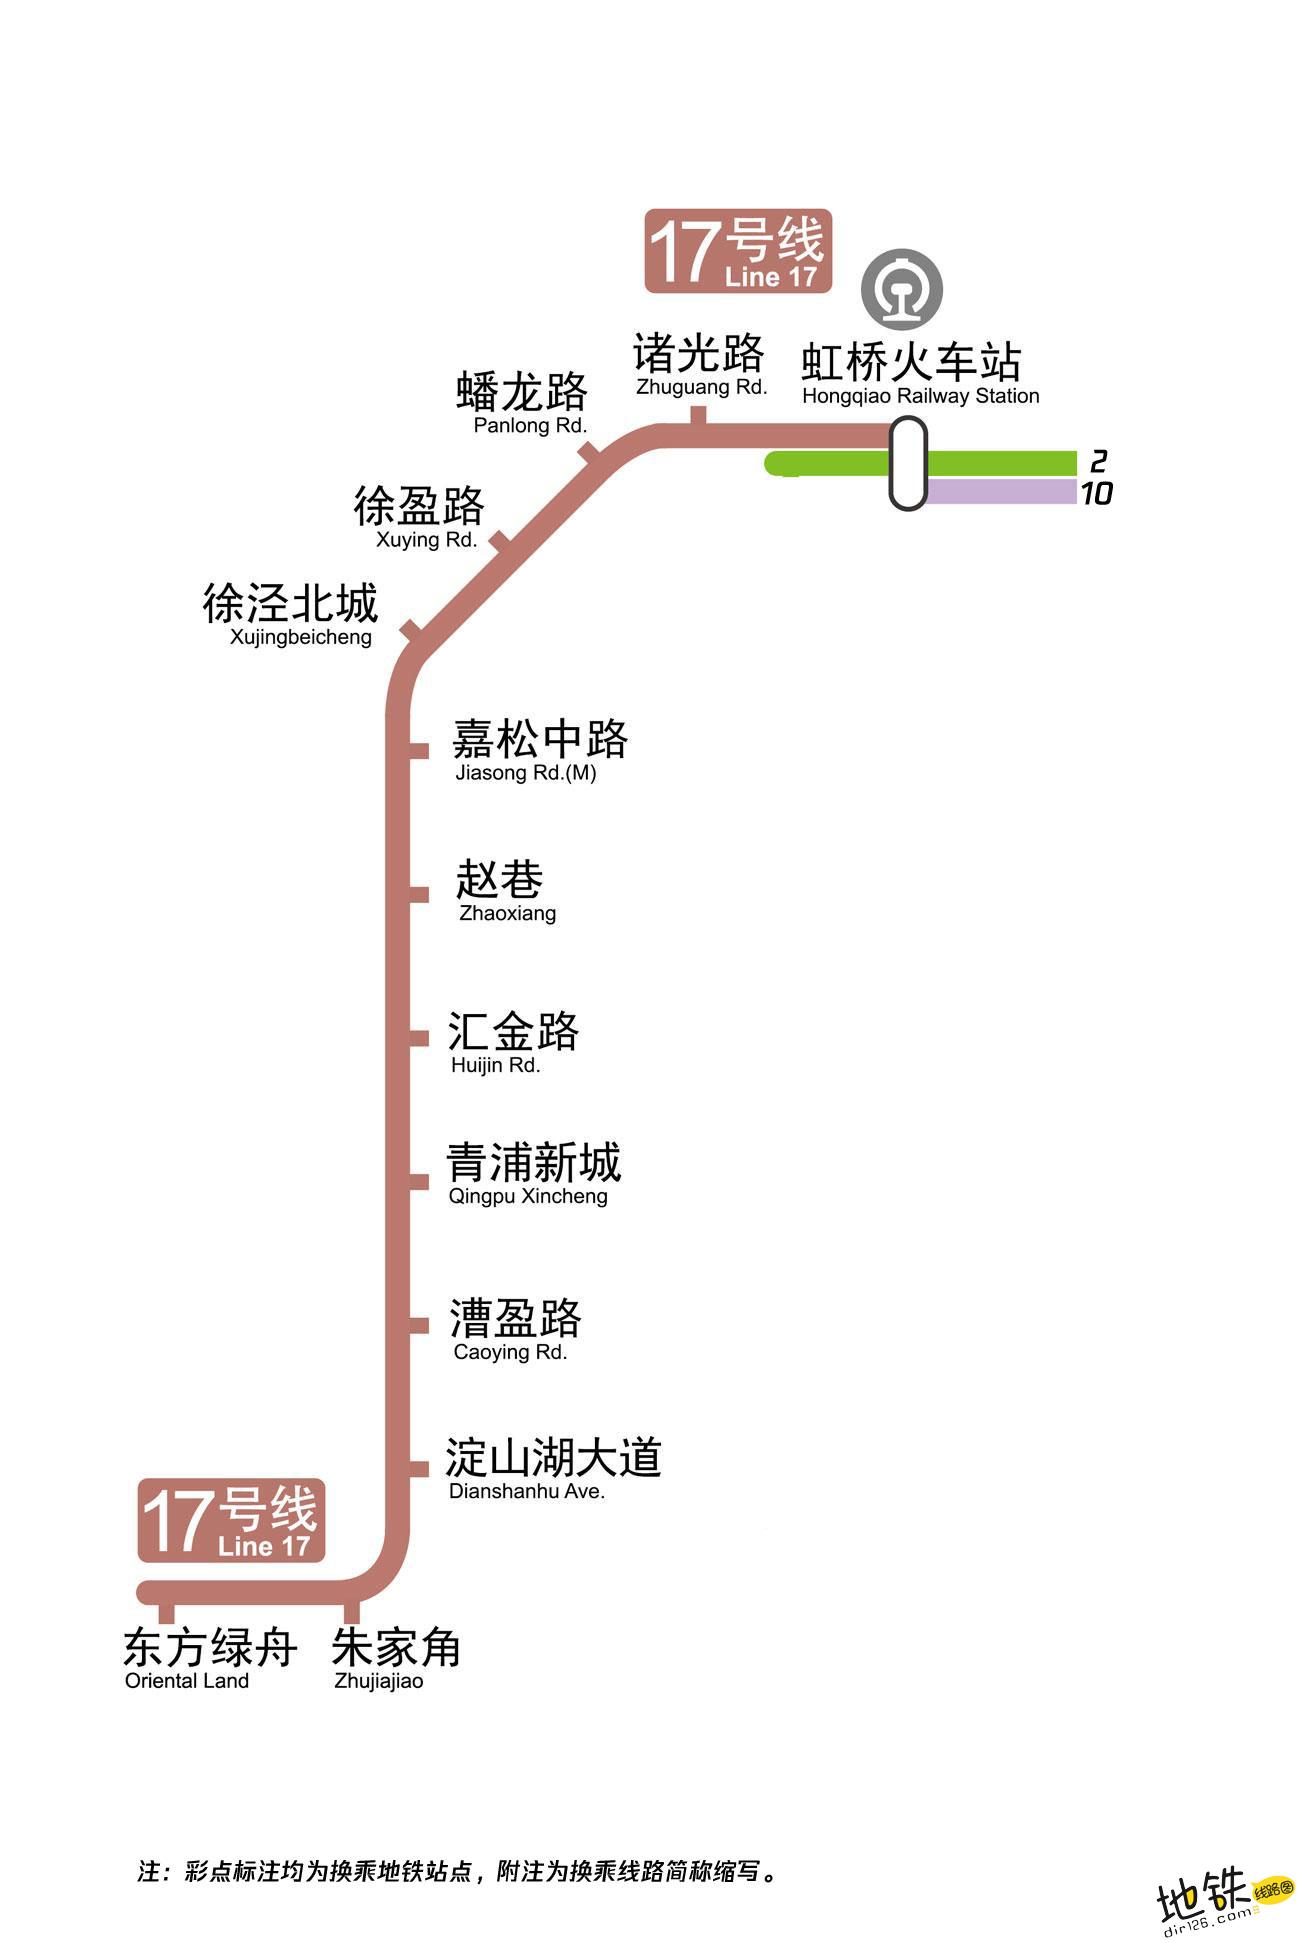 深圳市轨道交通运营线路网络图2021版（新增20号线一期站点）_深圳之窗